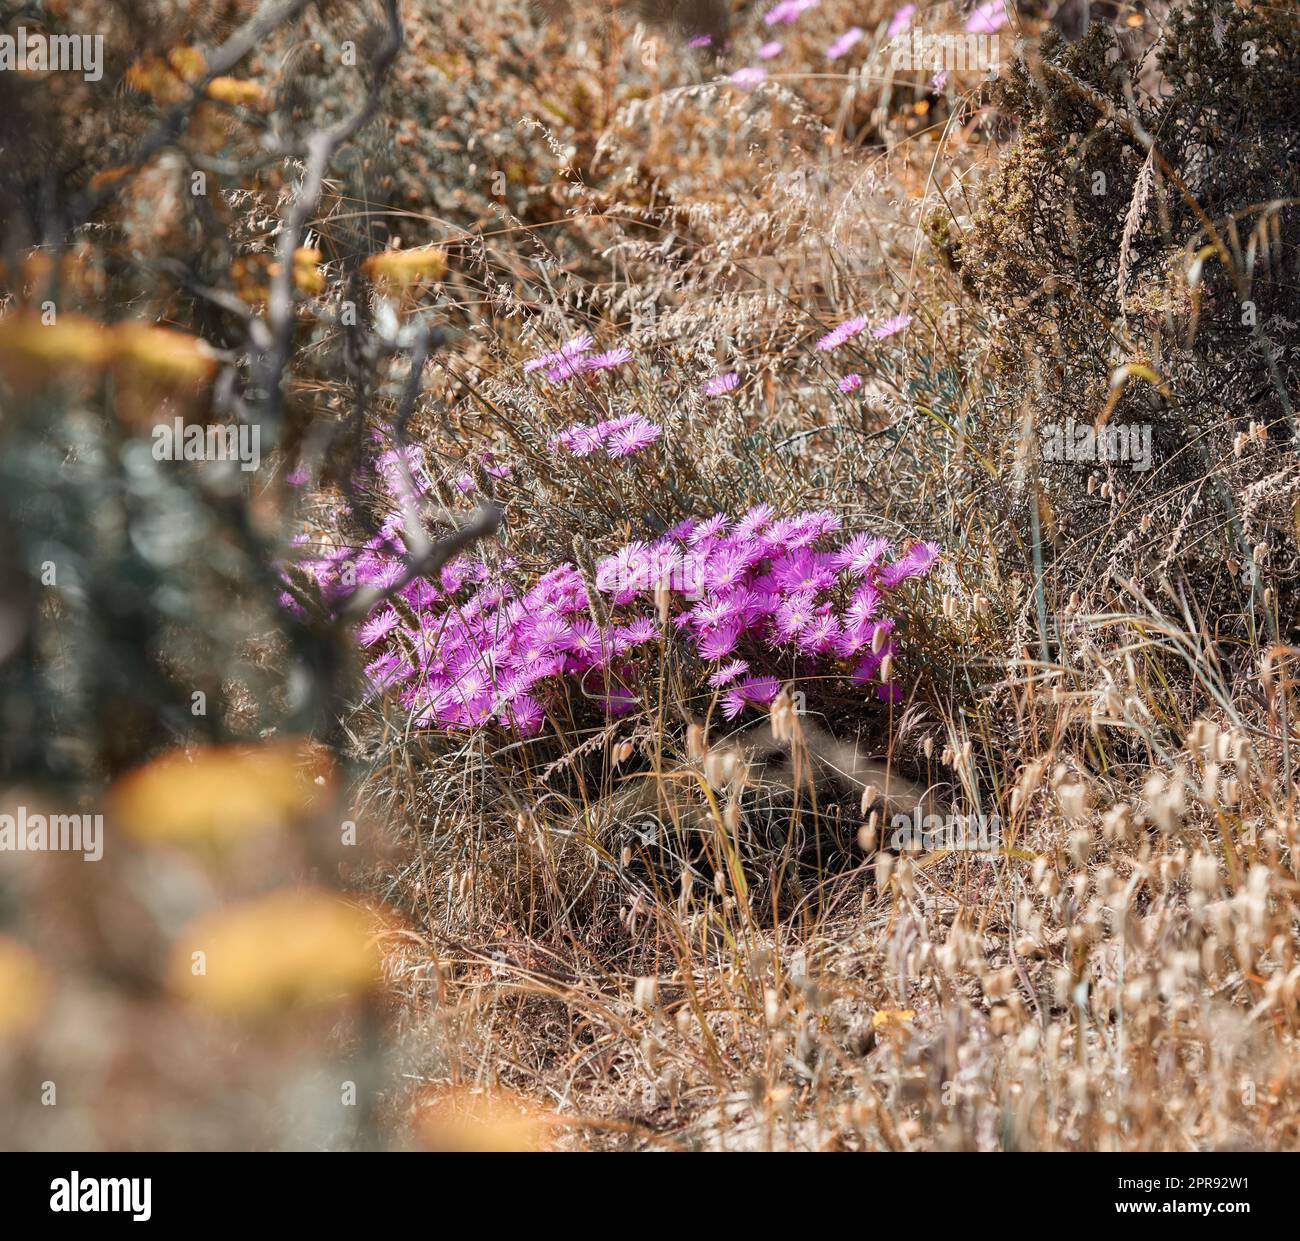 Rosafarbene Eispflanzen, die im trockenen Herbstgras auf abgelegenen Wiesen, Feldern oder in einem Naturschutzgebiet wachsen. Gesättigter Blick auf Büsche, Sträucher und Flora in friedlichem, friedlichem und wildem Land Stockfoto